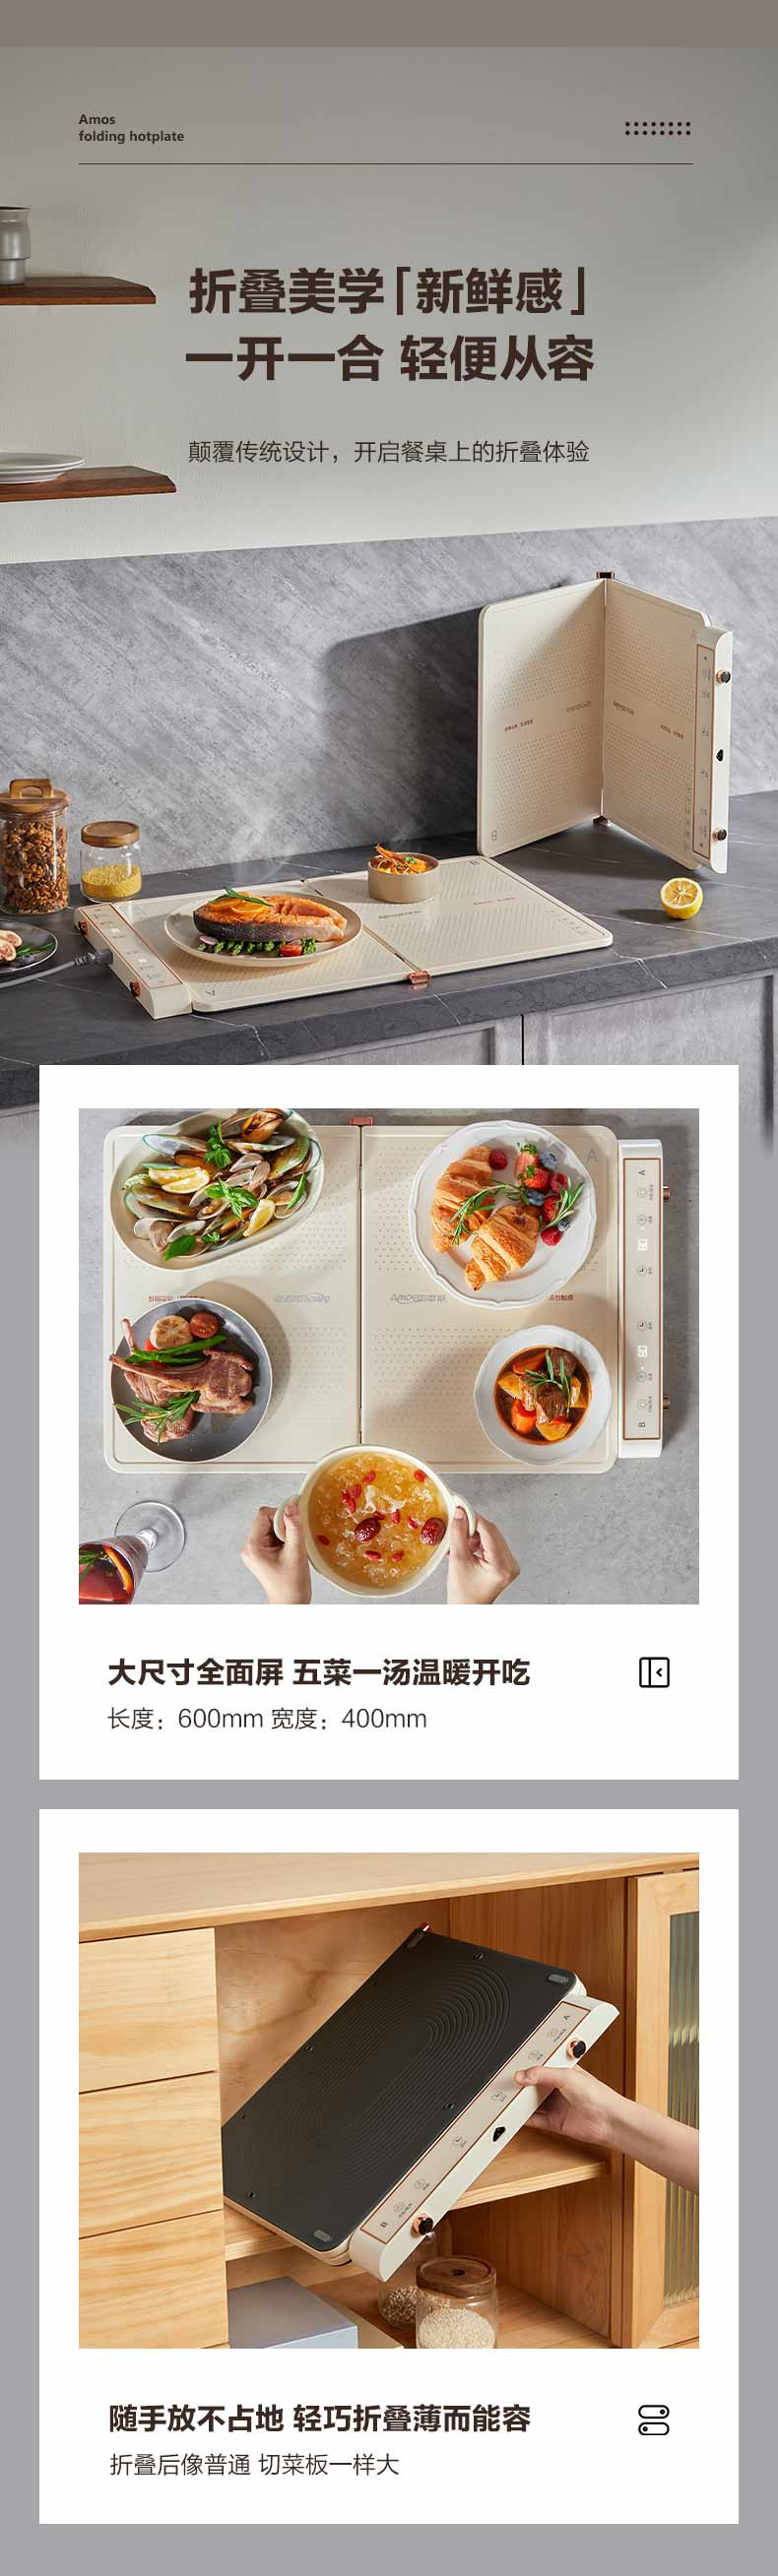 亚摩斯/AMOS 折叠暖菜板热菜板多功能家用方形餐桌饭菜保温板加热暖菜板垫AS-HR36Z